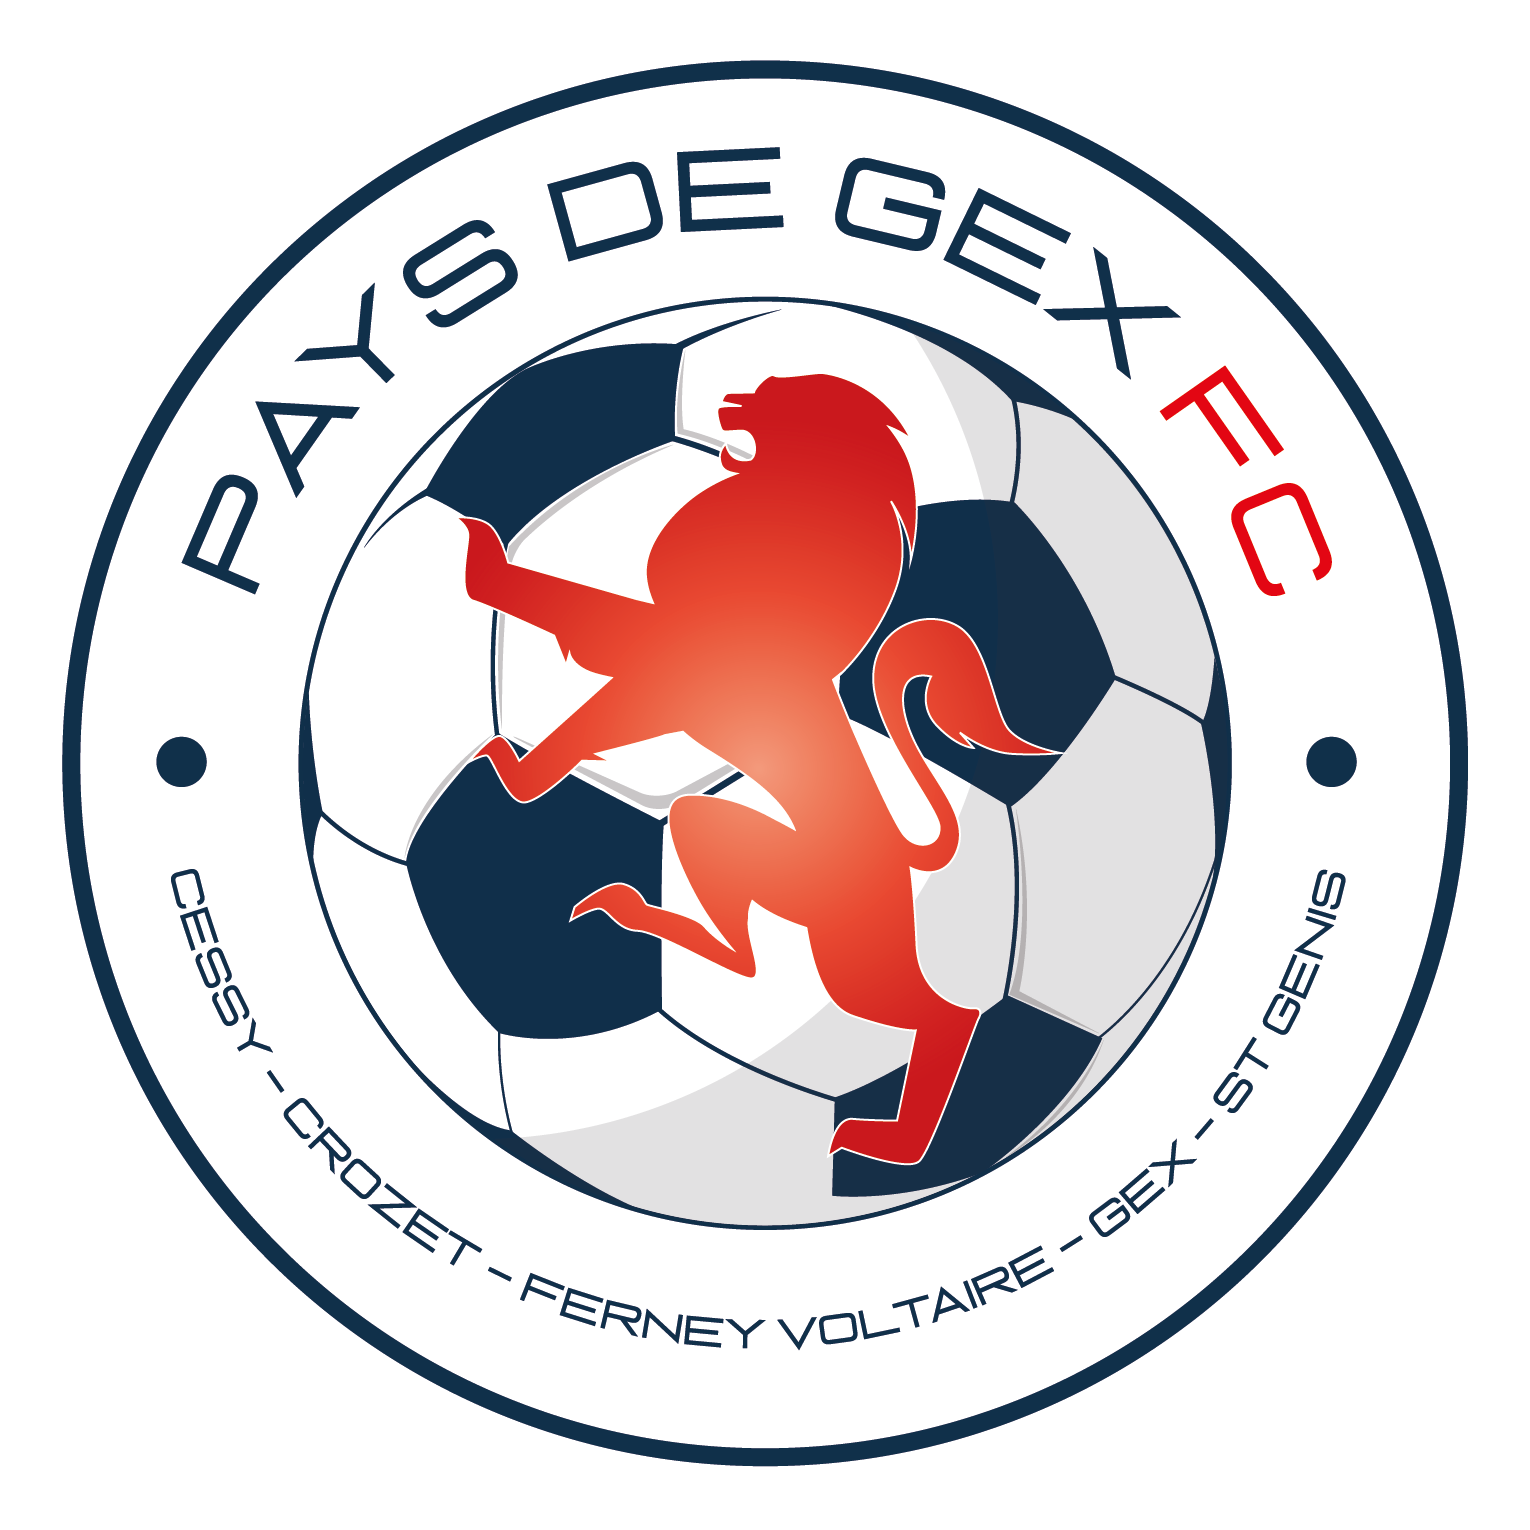 Wappen Pays de Gex FC diverse